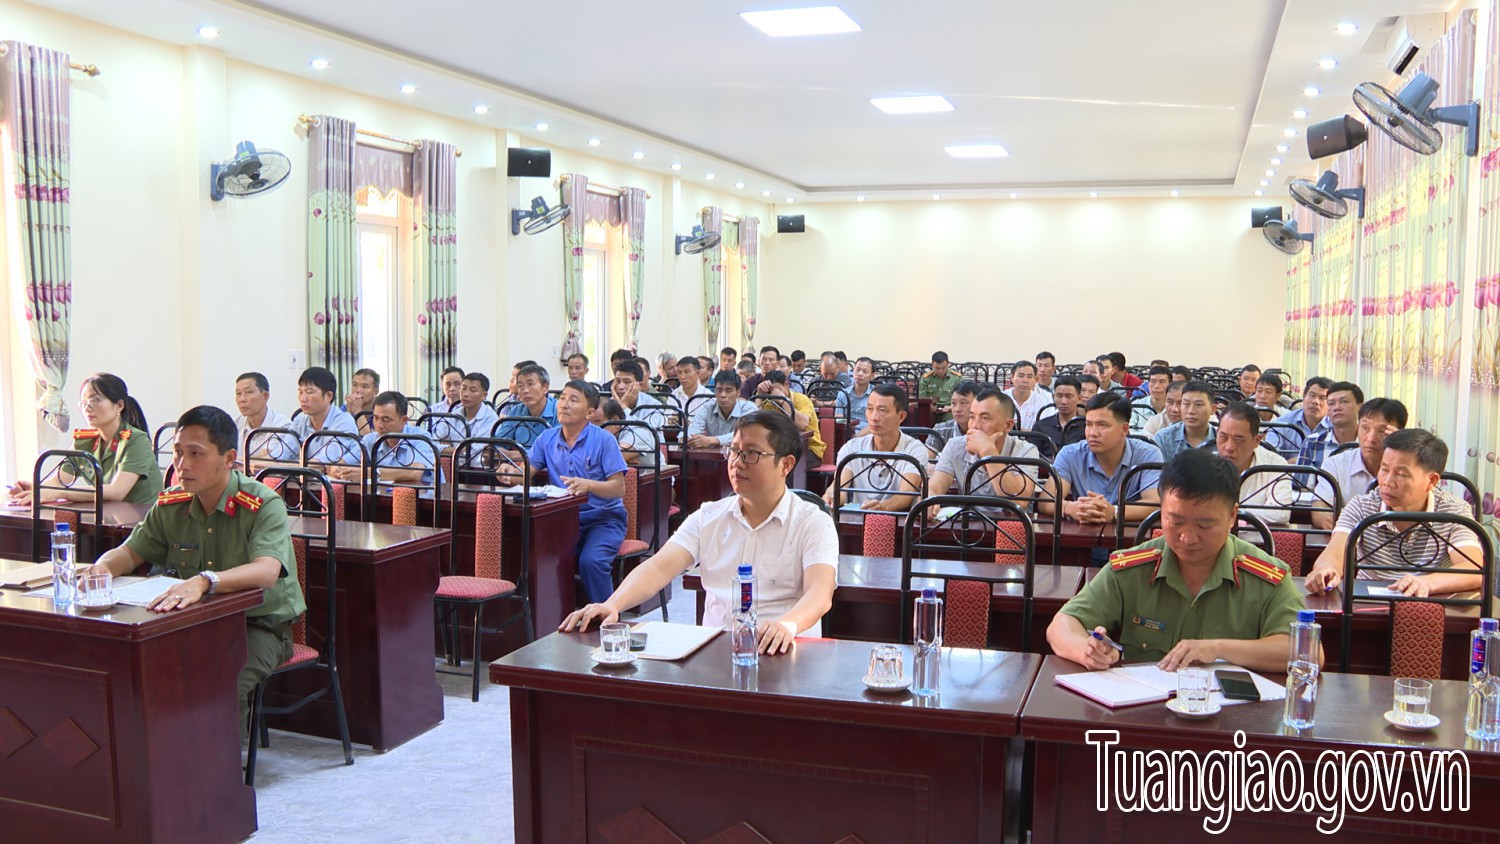 Công an tỉnh Điện Biên tổ chức tập huấn nghiệp vụ bảo vệ cho lực lượng bảo vệ cơ quan, doanh nghiệp, trường học trên địa bàn huyện Tuần Giáo